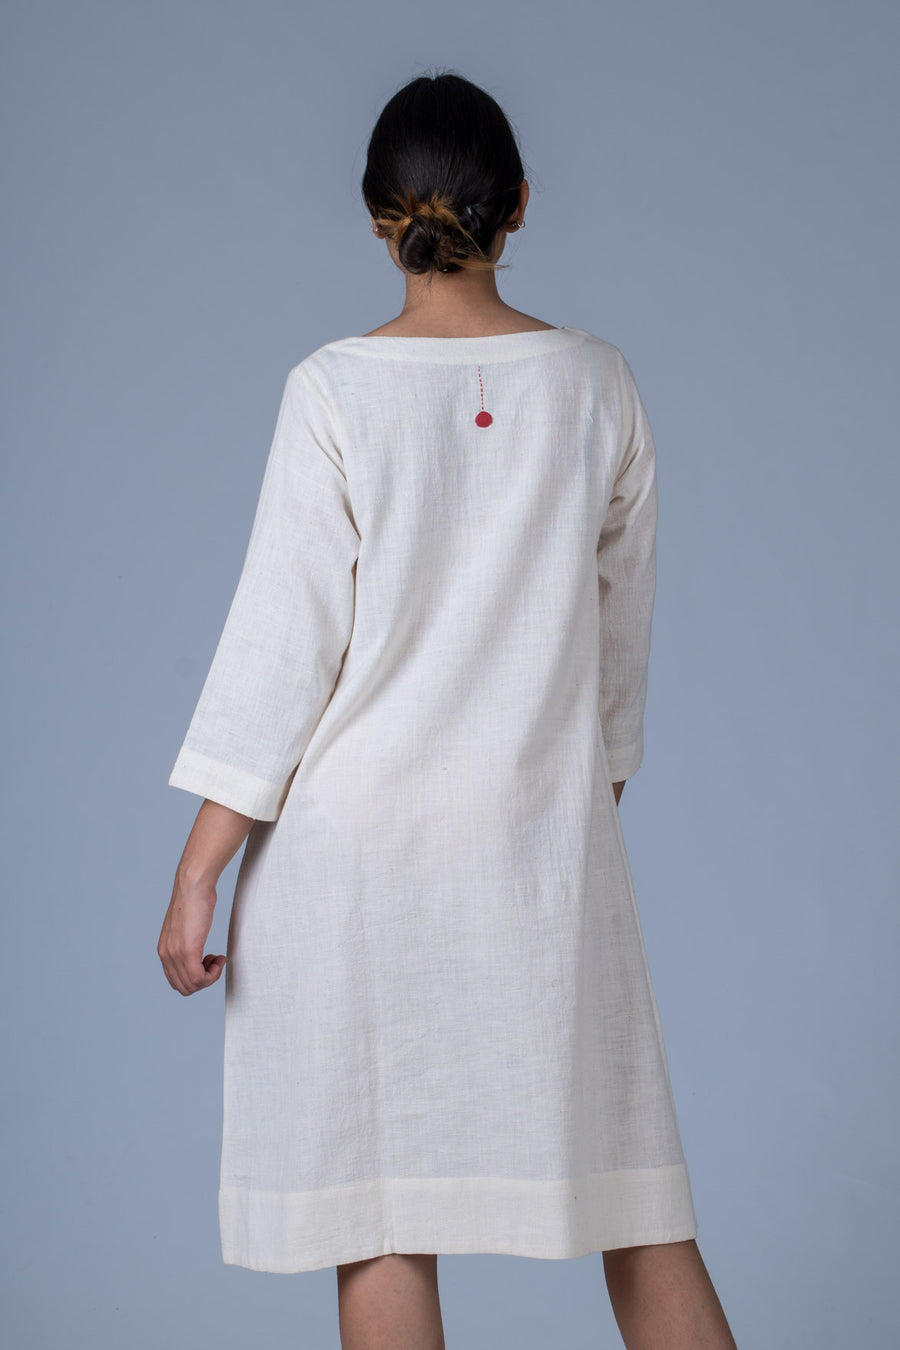 Off White Desi Khadi Dress - PARINA - Upasana Design Studio